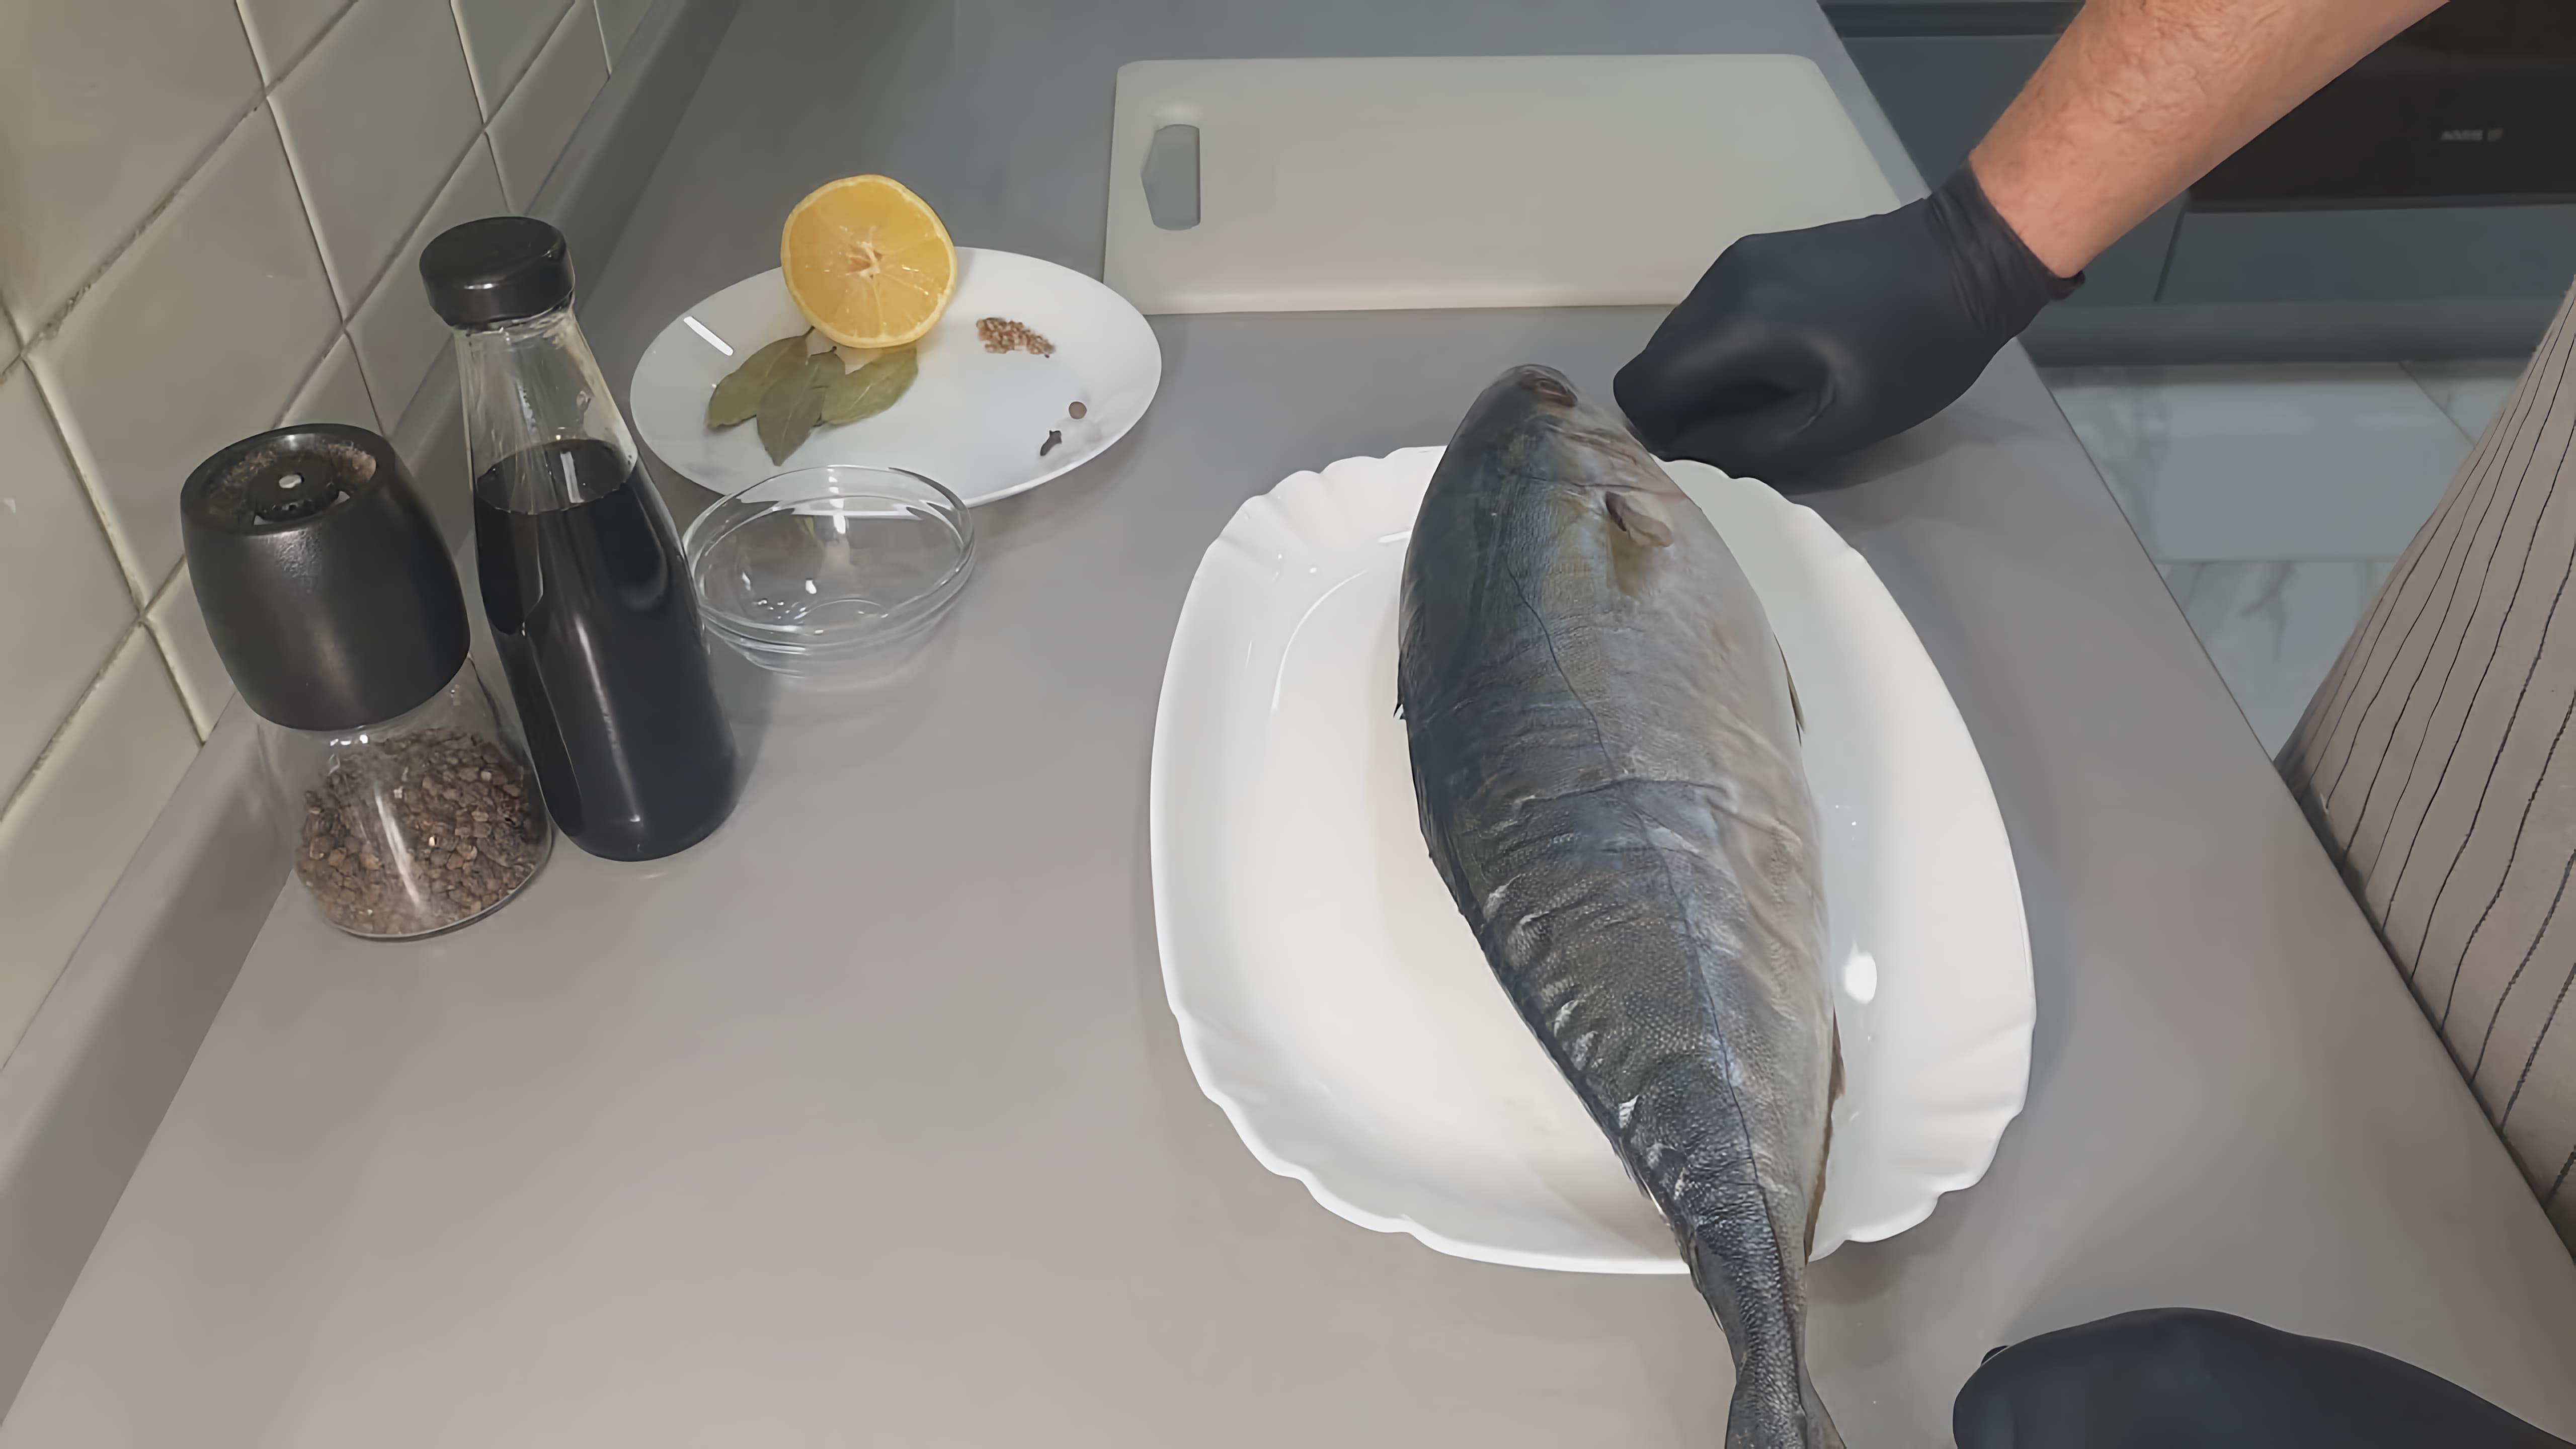 В этом видео демонстрируется рецепт запекания рыбы под названием лакедра или желтохвост